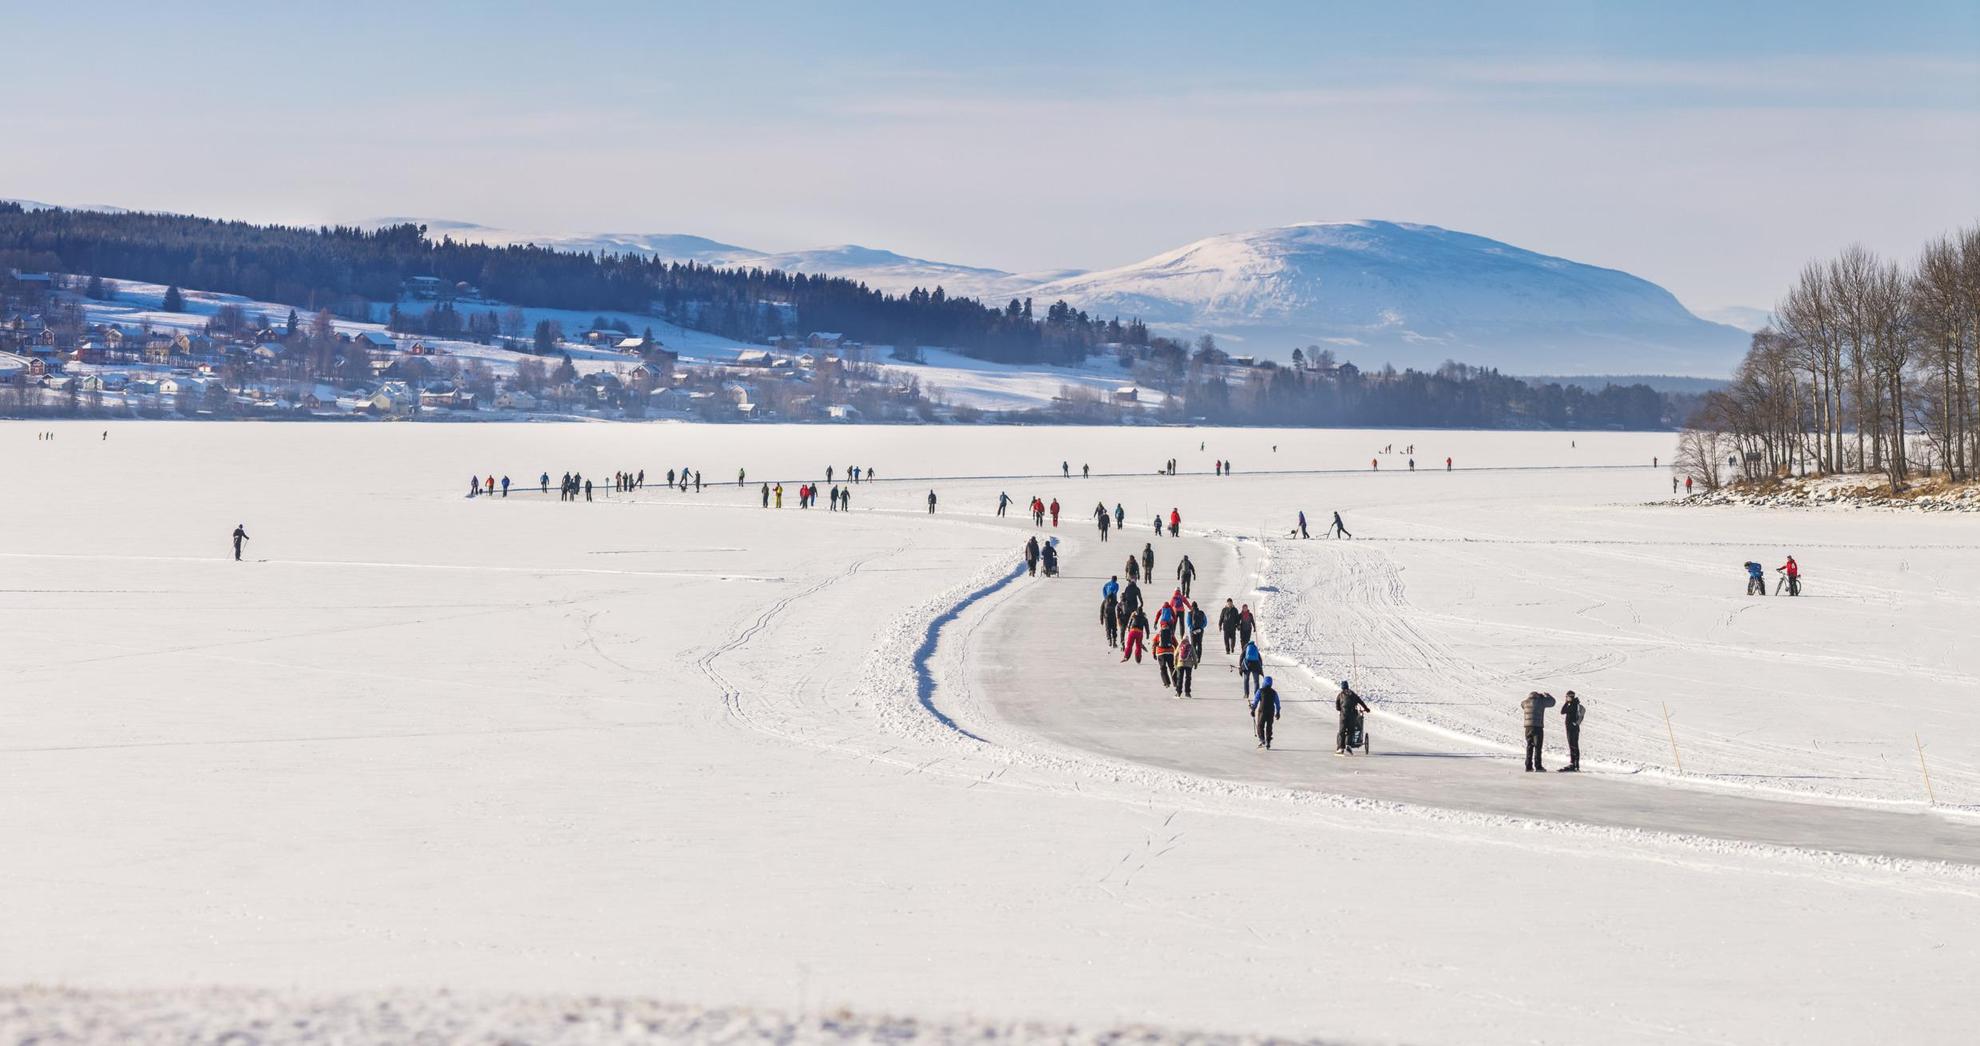 Plusieurs personnes font du patin à glace sur des pistes préparées sur un lac gelé recouvert de neige. On voit en arrière plan, des maisons, des arbres et des montagnes.